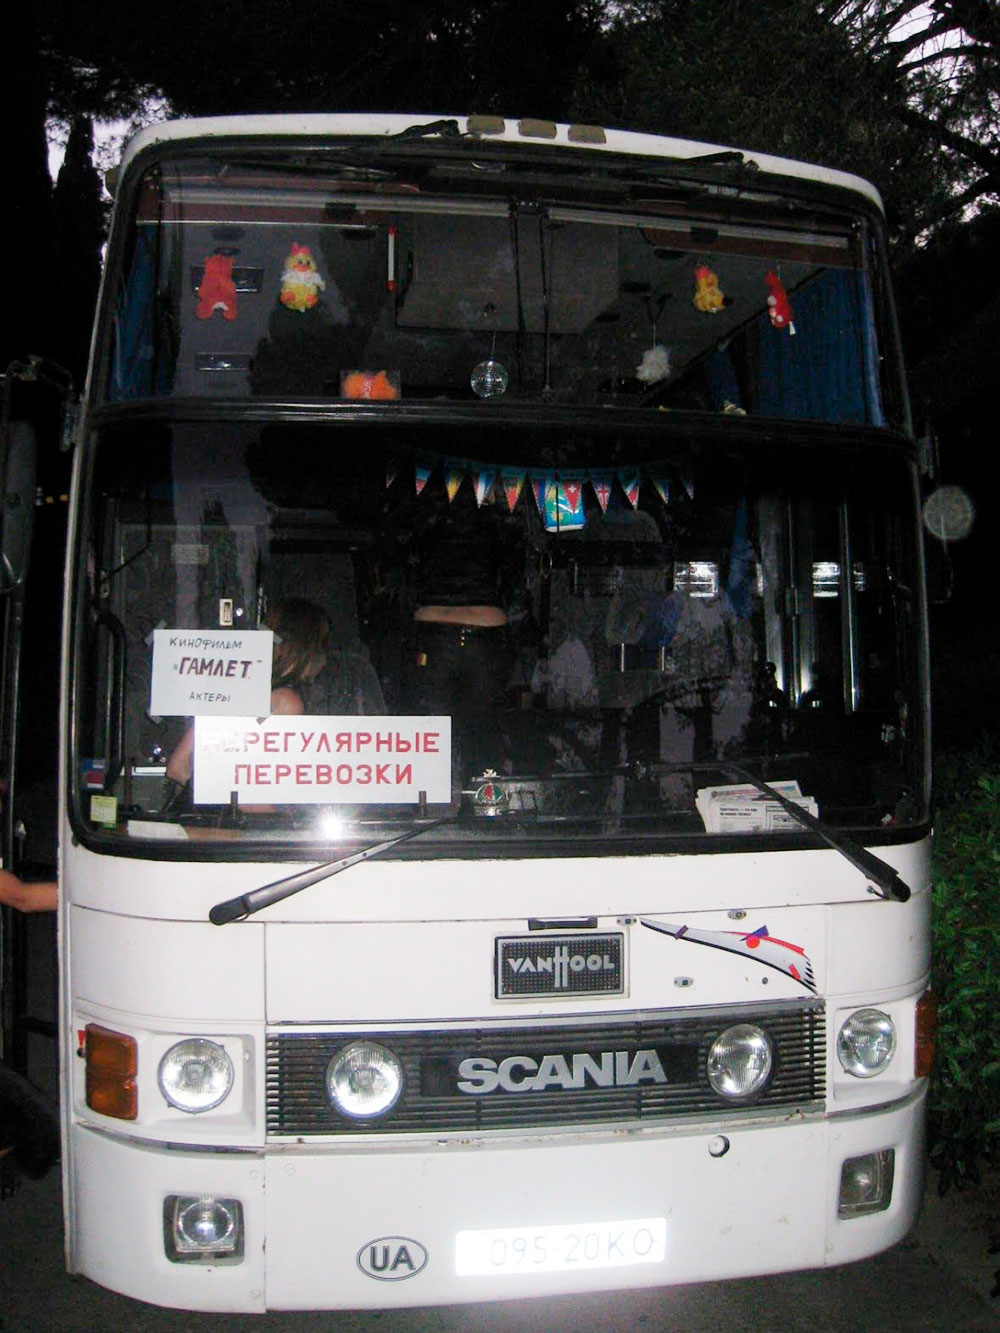 Автобус, на котором массовку возили до места съемок и обратно. На лобовом стекле надпись: «Кинофильм „Гамлет“, актеры»